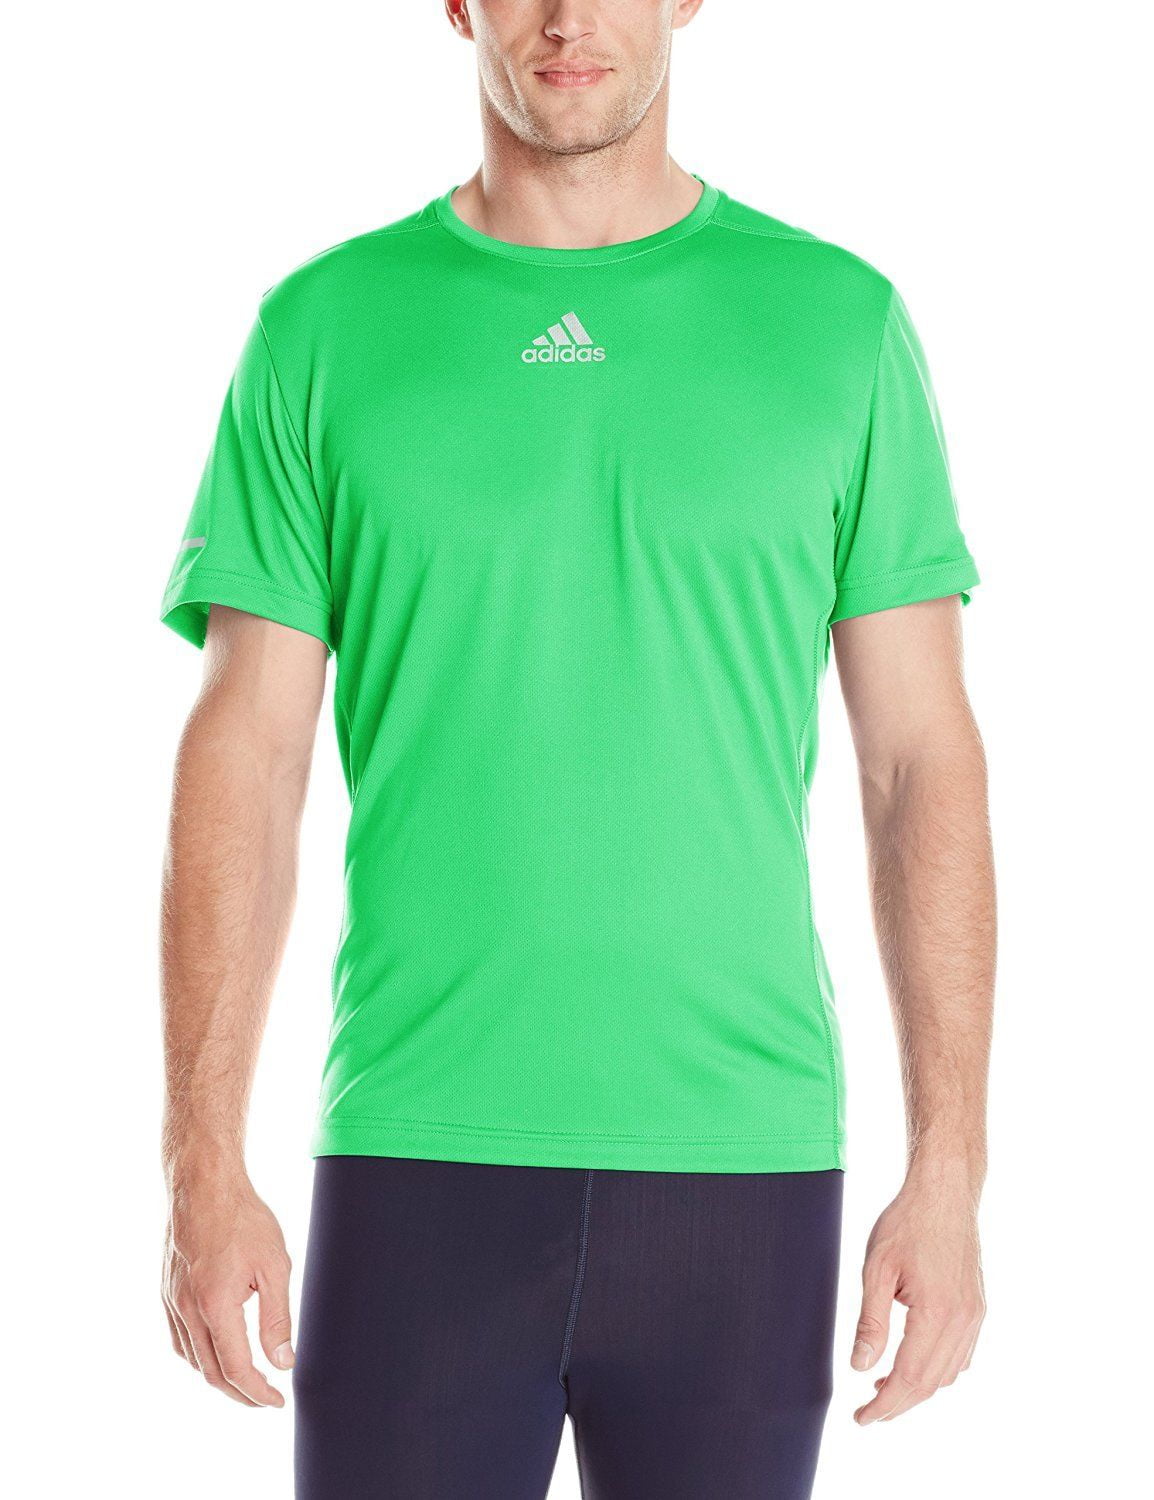 Adidas Men's Active Performance Sequentials T-Shirt 939011 - Walmart.com